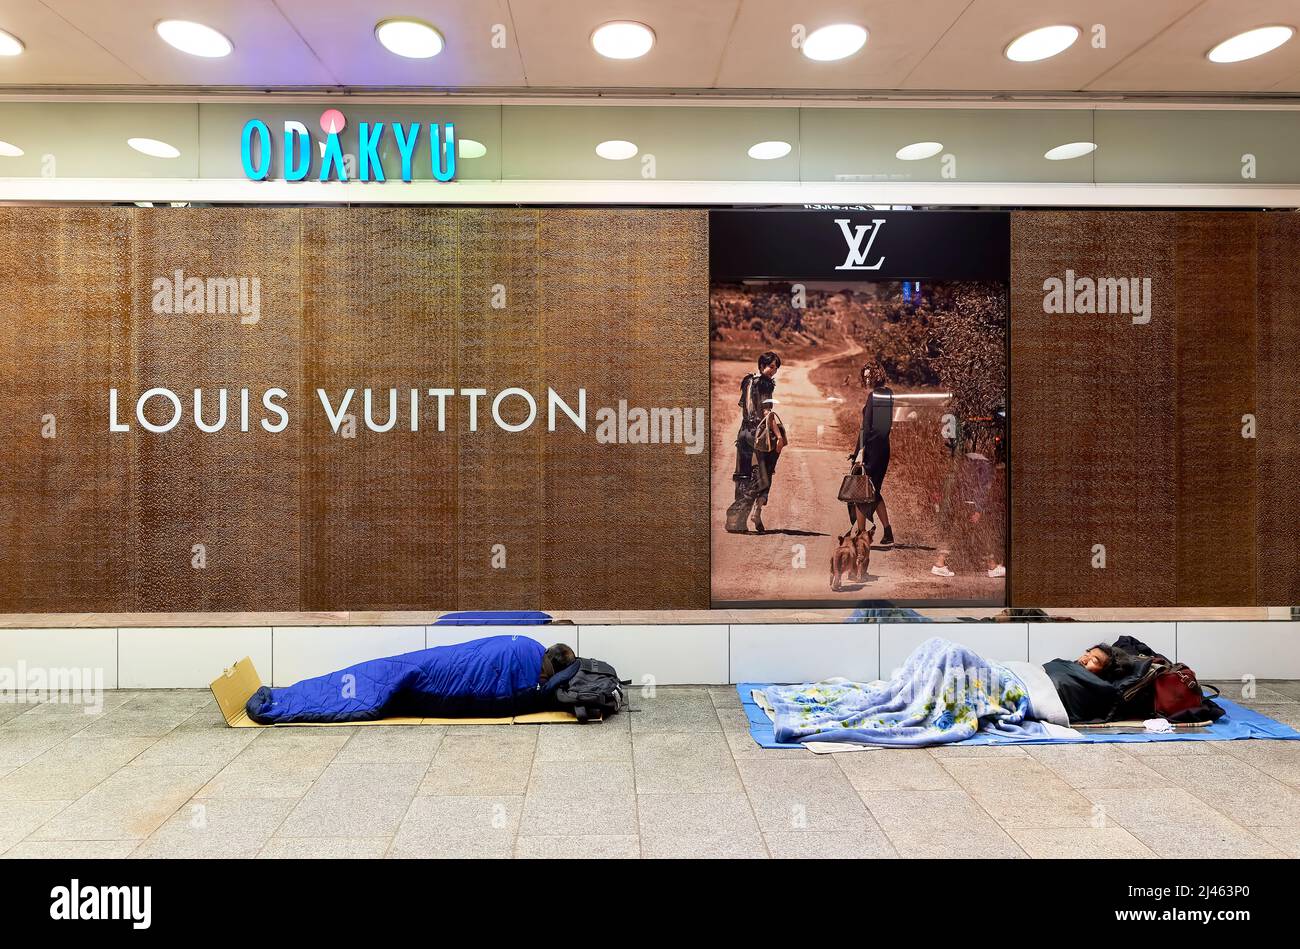 Louis Vuitton shop in Sakae, Nagoya, Japan Stock Photo - Alamy